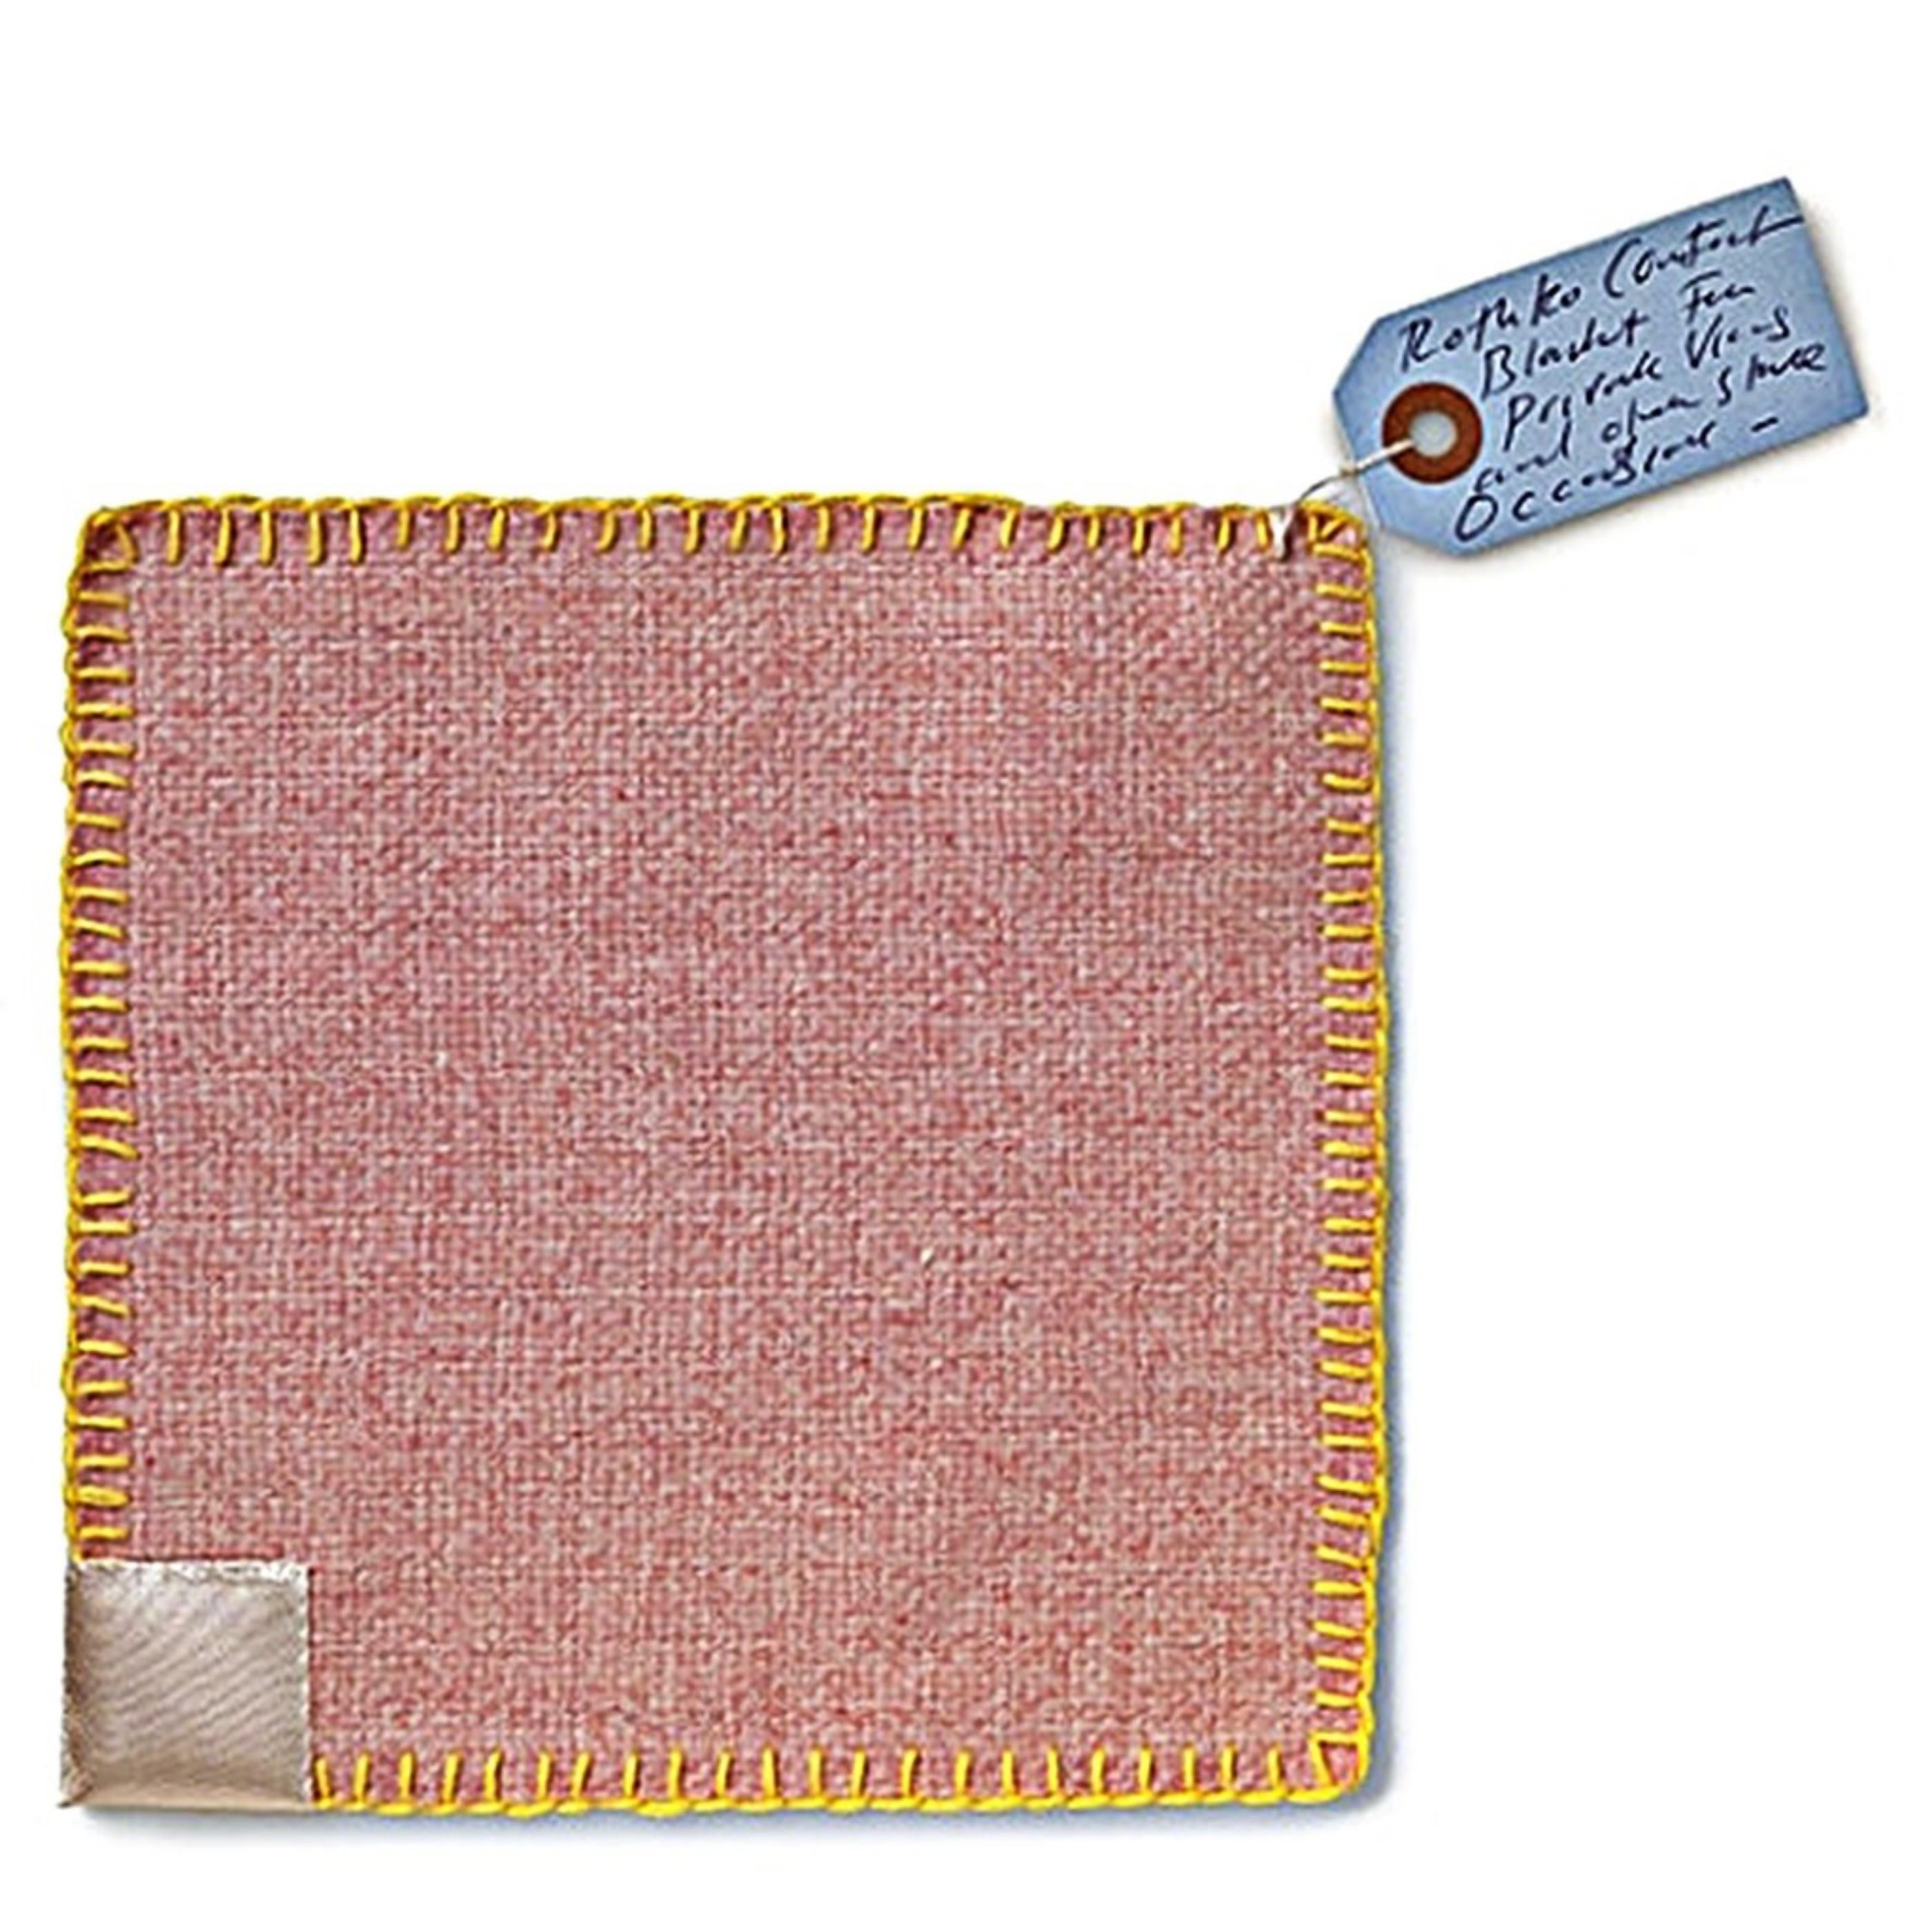 Abstract Print Tracey Emin - Rothko Comfort Blanket (textile en édition limitée avec étiquette signée à la main)